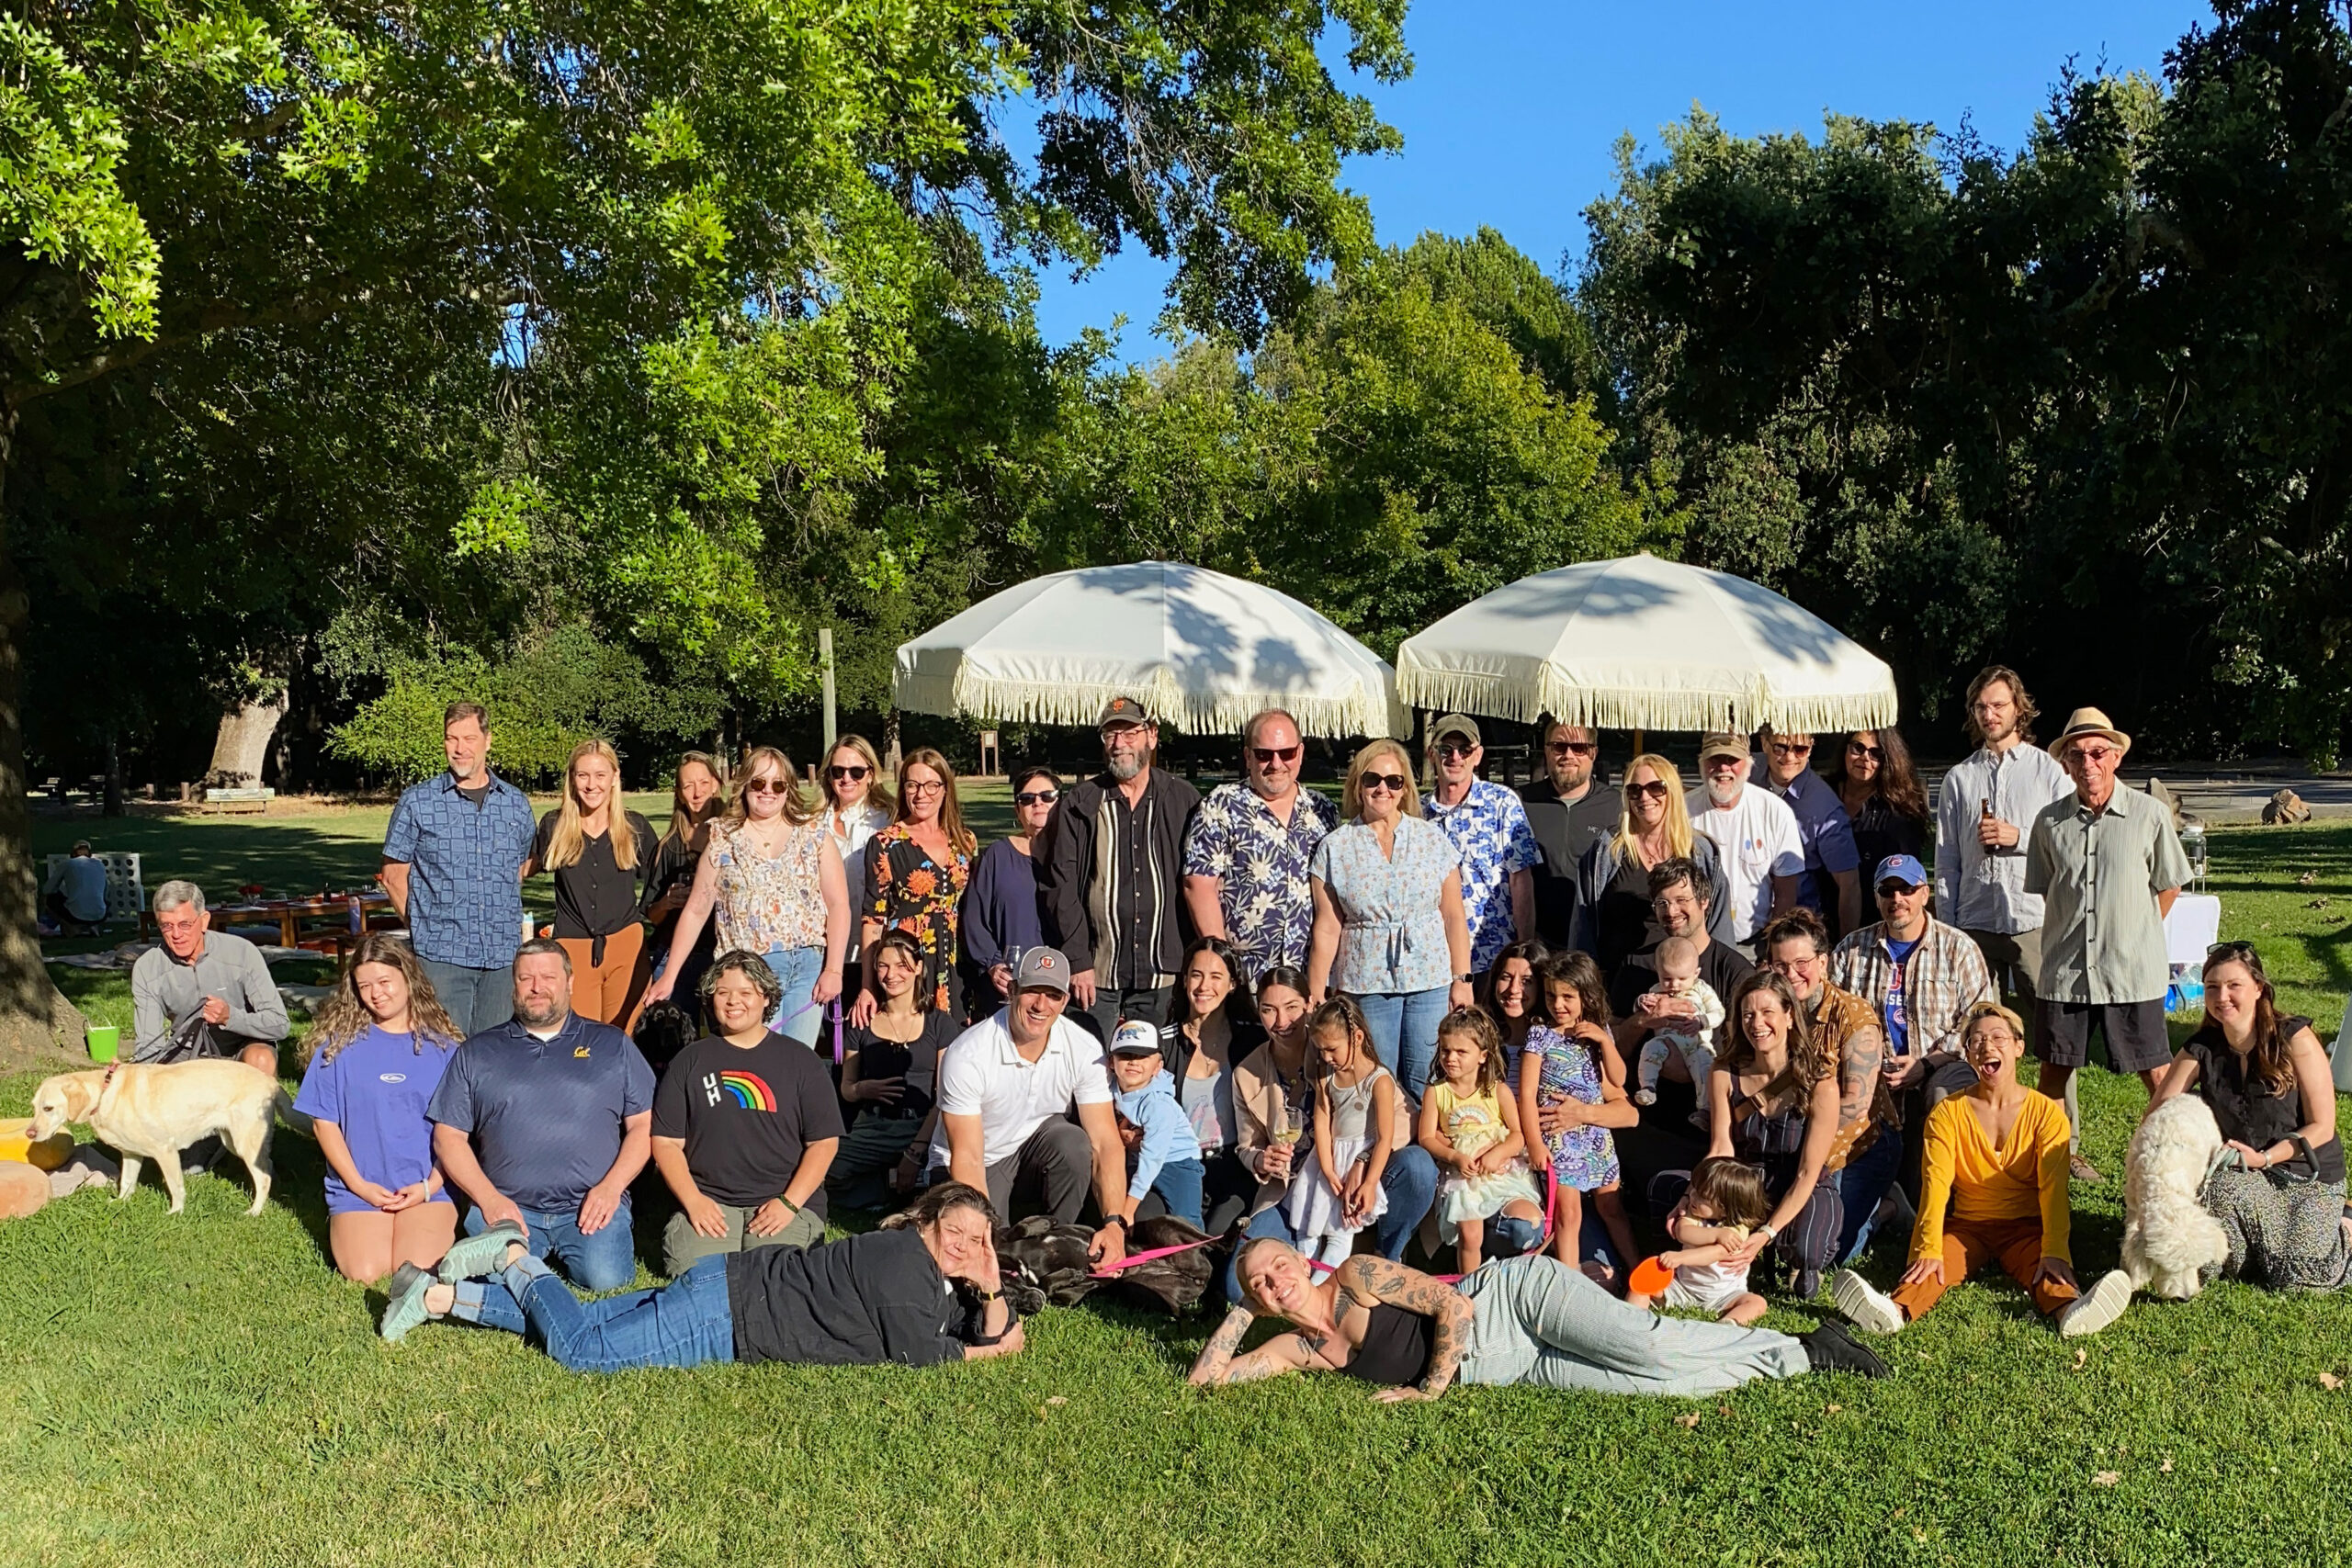 TLCD team at annual company picnic at Doyle Park in Santa Rosa